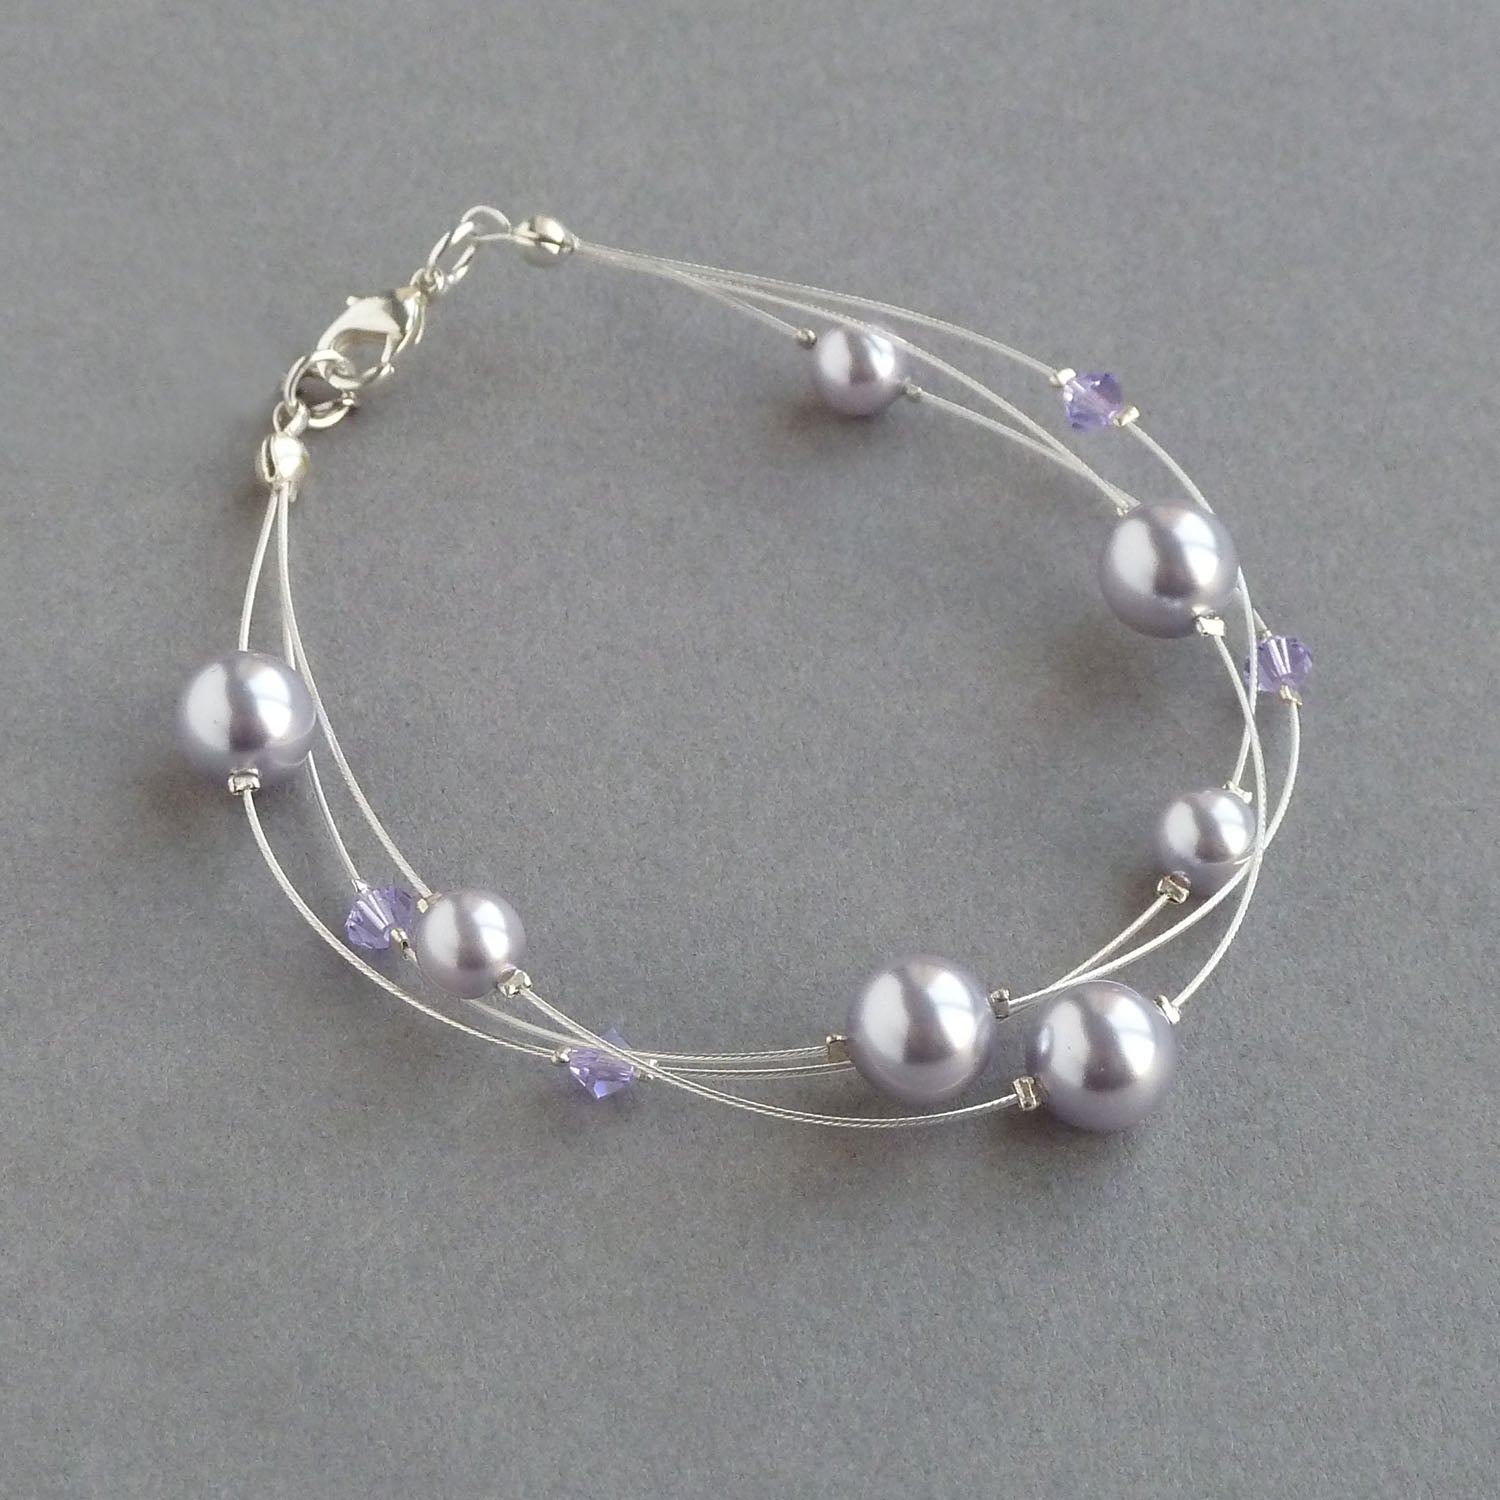 Lavender multi strand bracelet